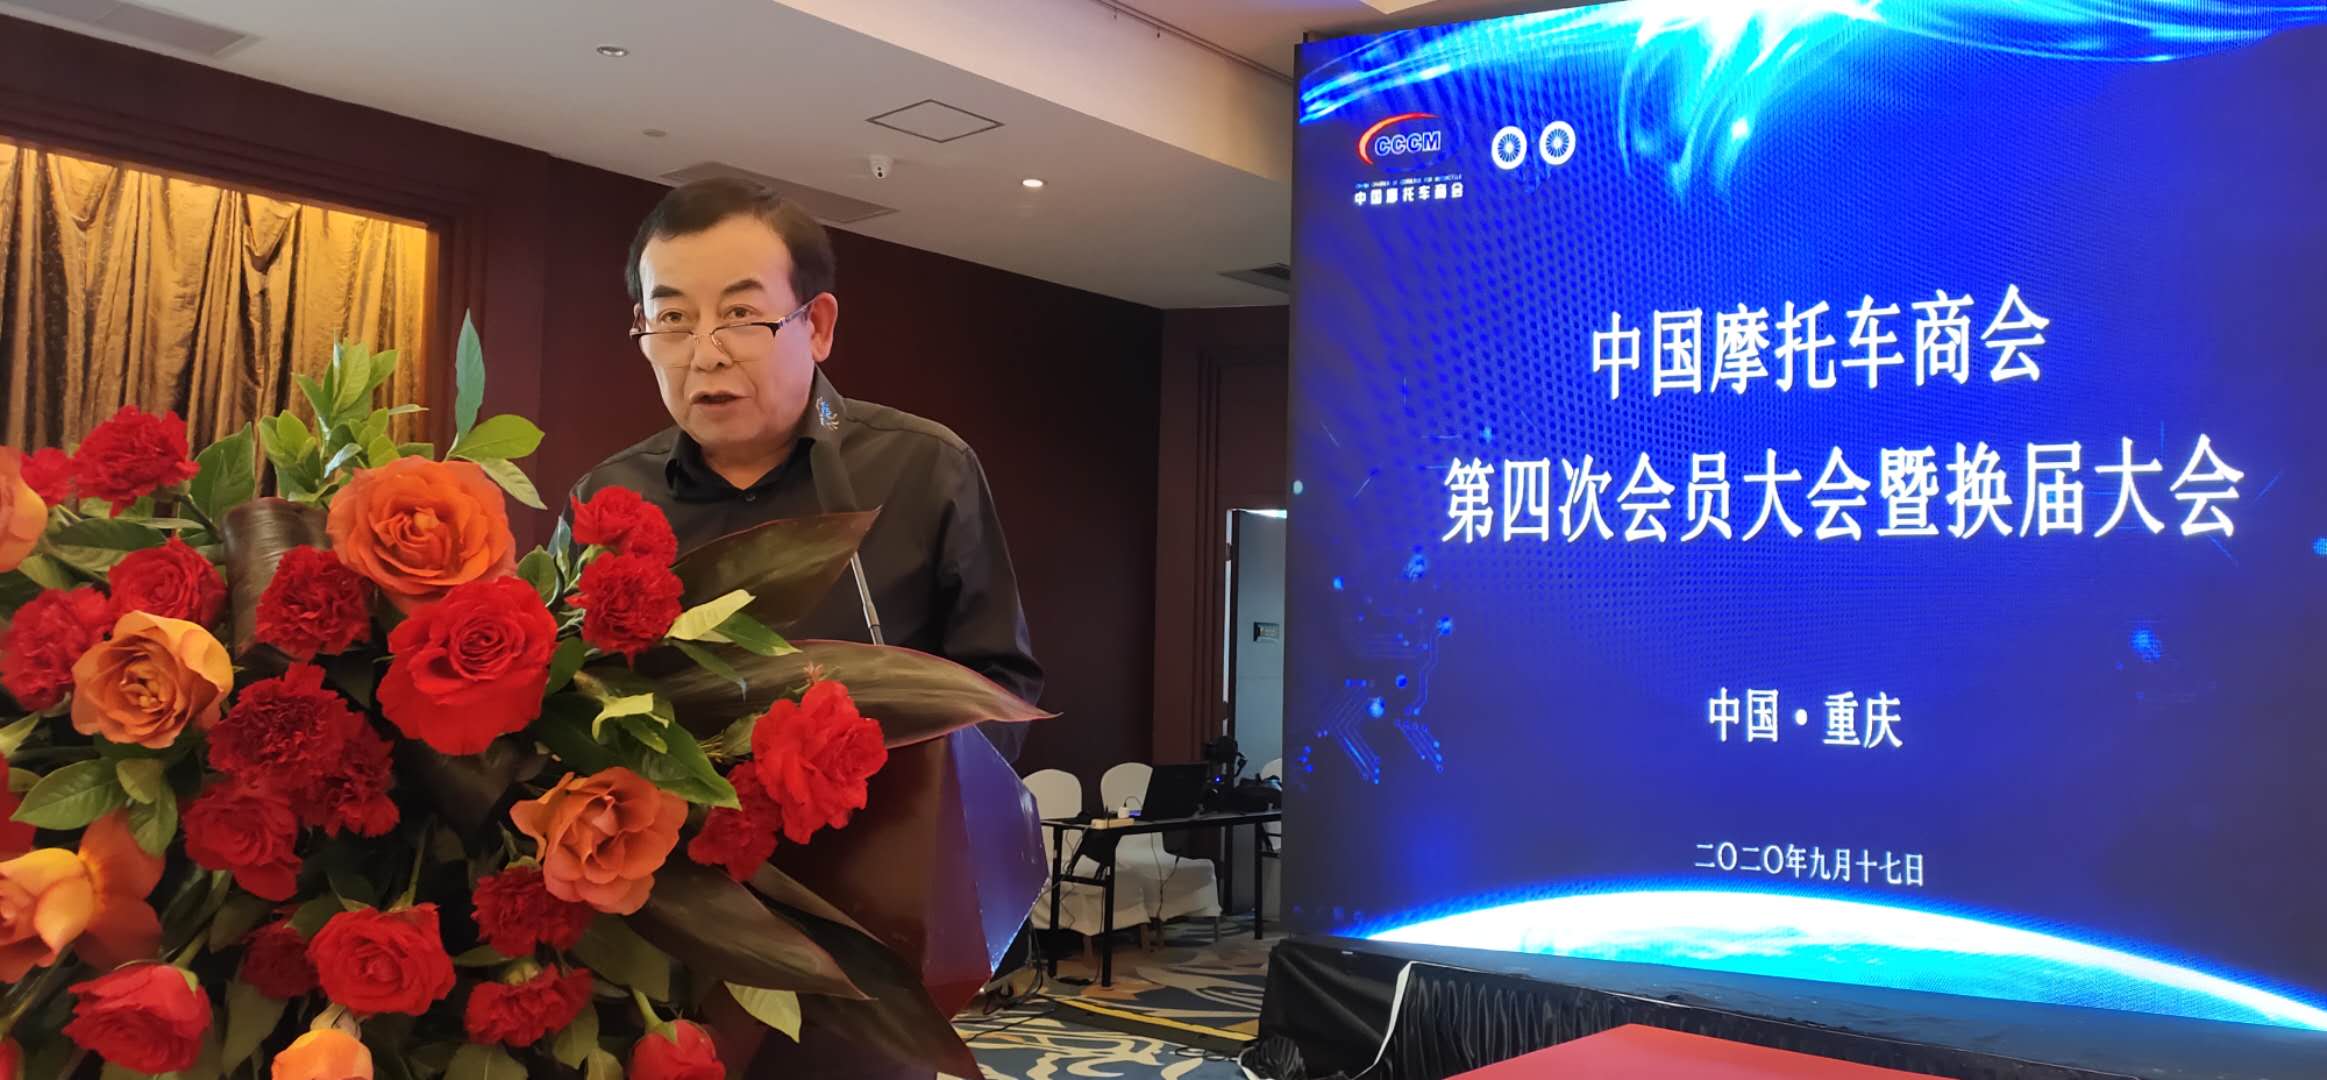 تم انتخاب Zuo Zongshen رئيسًا لغرفة التجارة الصينية للدراجات النارية